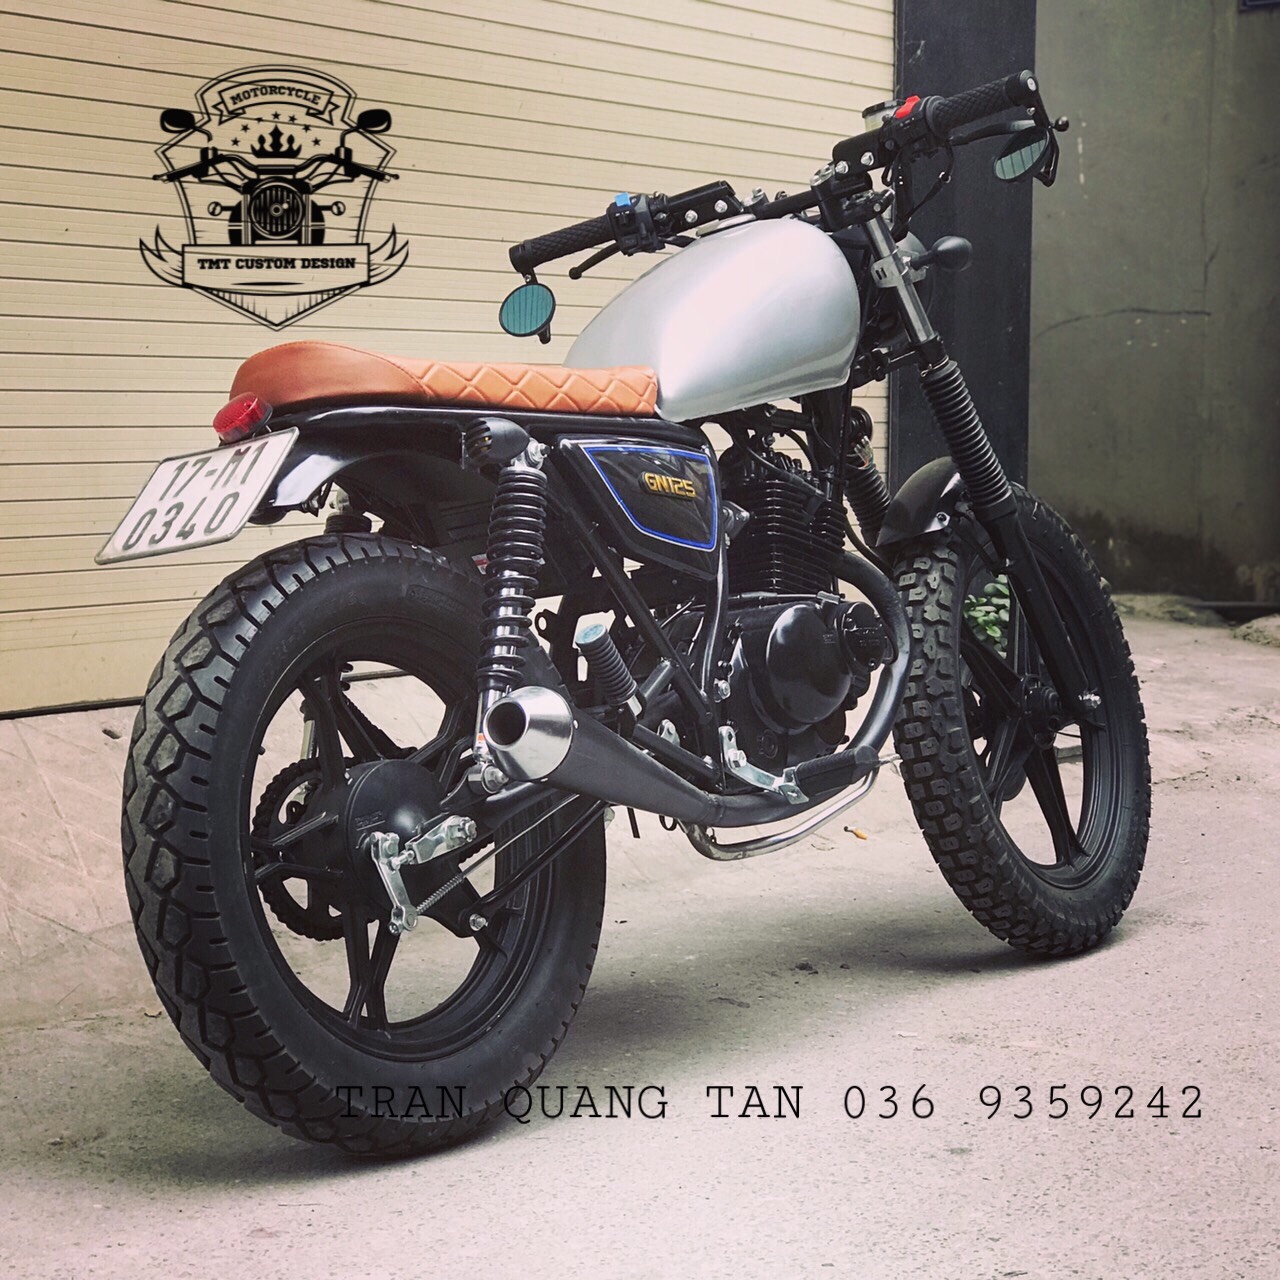 giới thiệu xe moto suzuki gn 125 độ cafe racer  YouTube